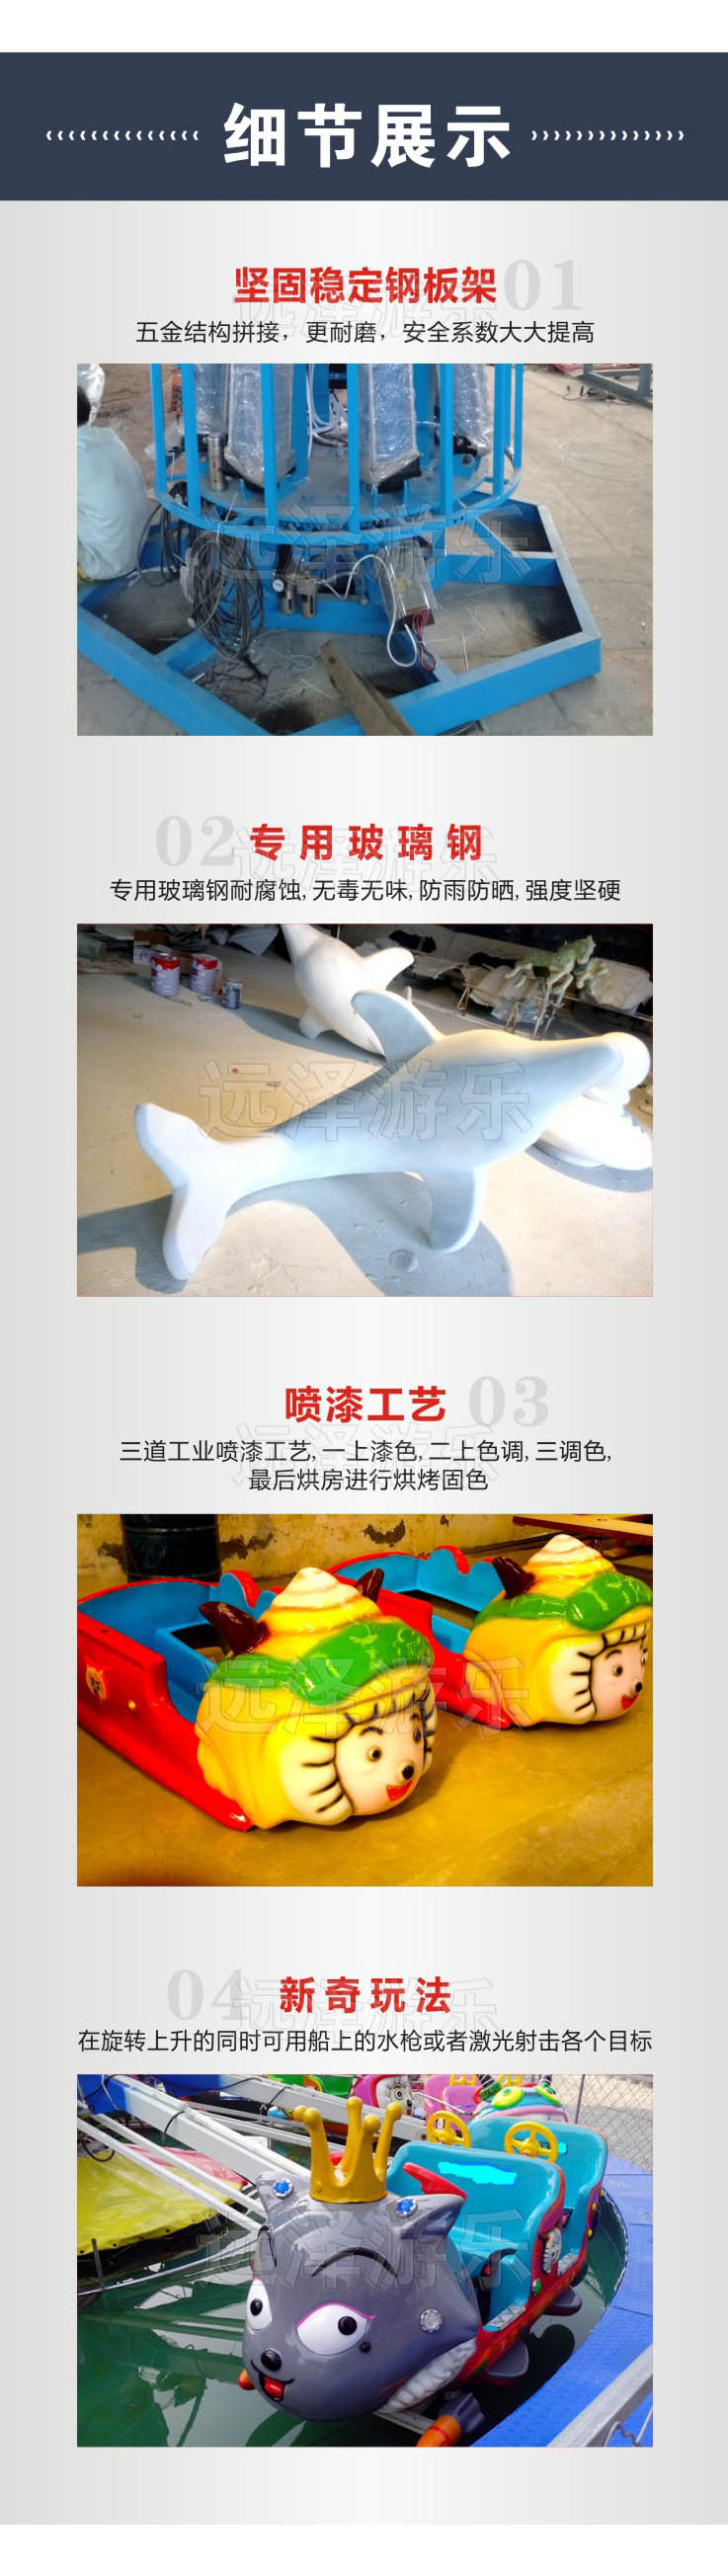 广州自控飞羊游乐设施 喜洋洋自控飞机带水池 夏季儿童游乐设备 4